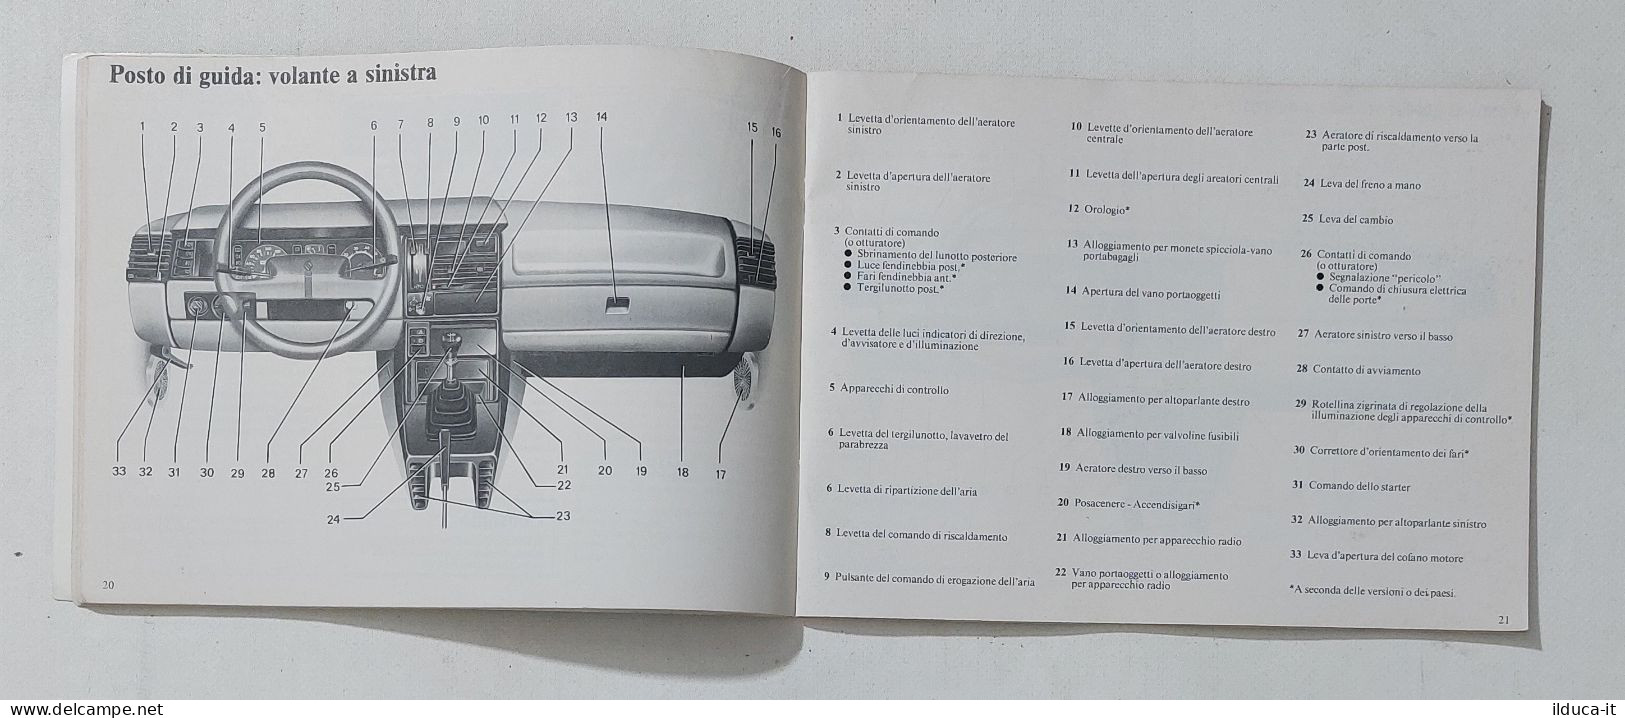 69872 Uso E Manutenzione - Renault 11 - Motorfietsen